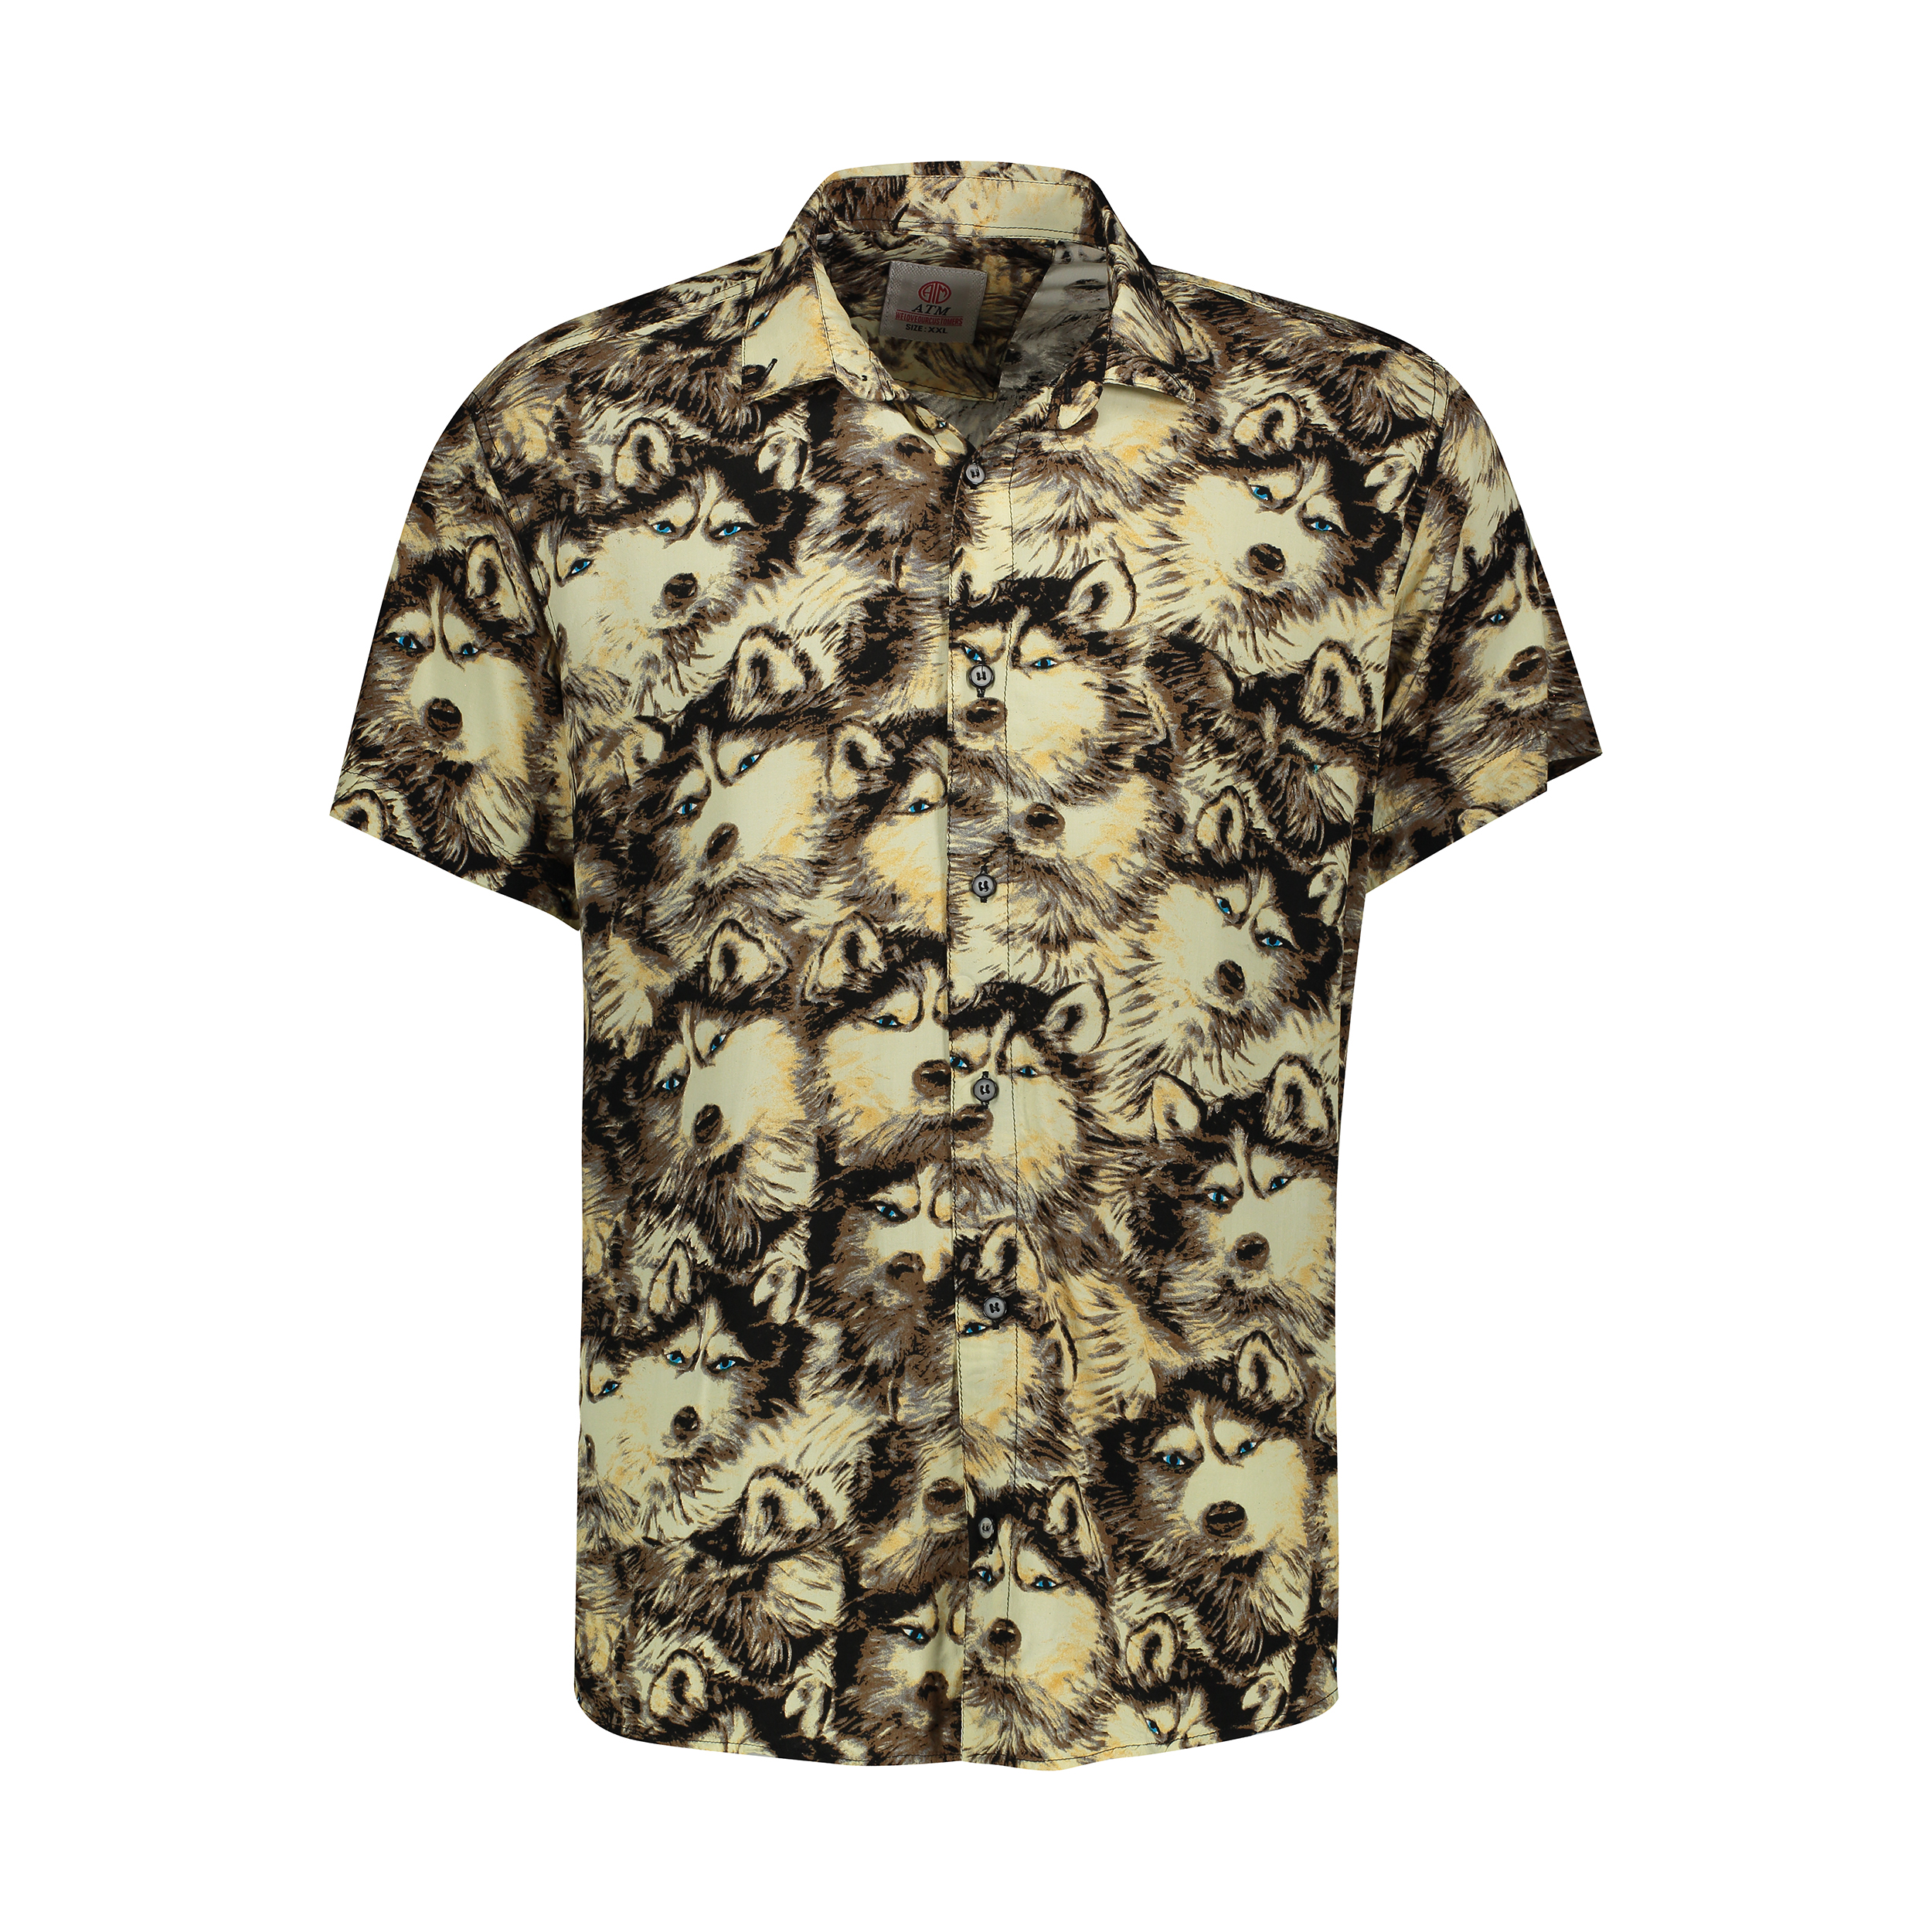 نکته خرید - قیمت روز پیراهن مردانه مدل هاوایی کد H-05H خرید